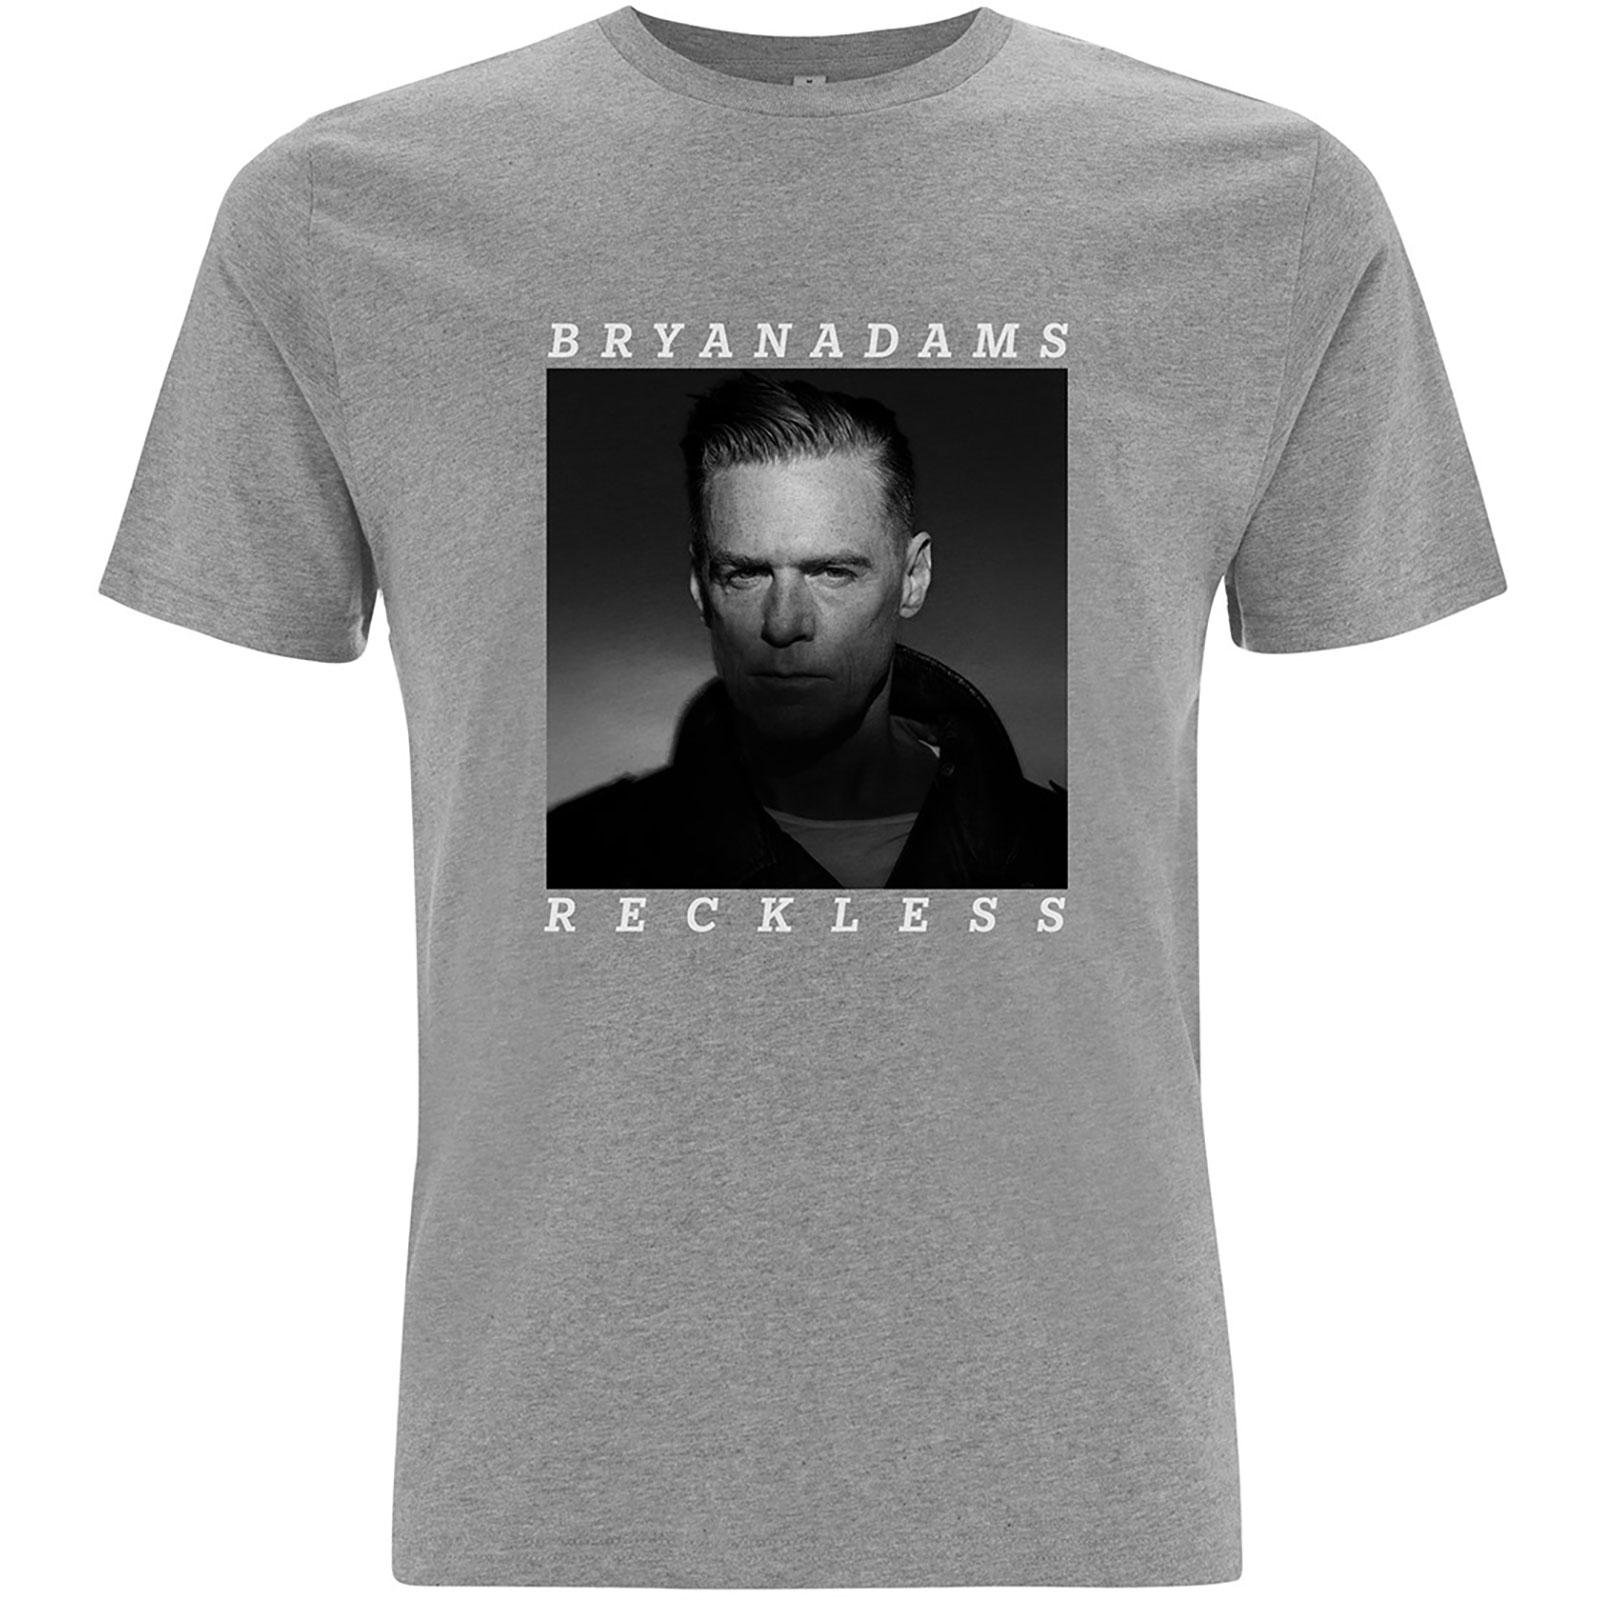 (ブライアン・アダムス) Bryan Adams オフィシャル商品 ユニセックス Reckless Tシャツ コットン 半袖 トップス 